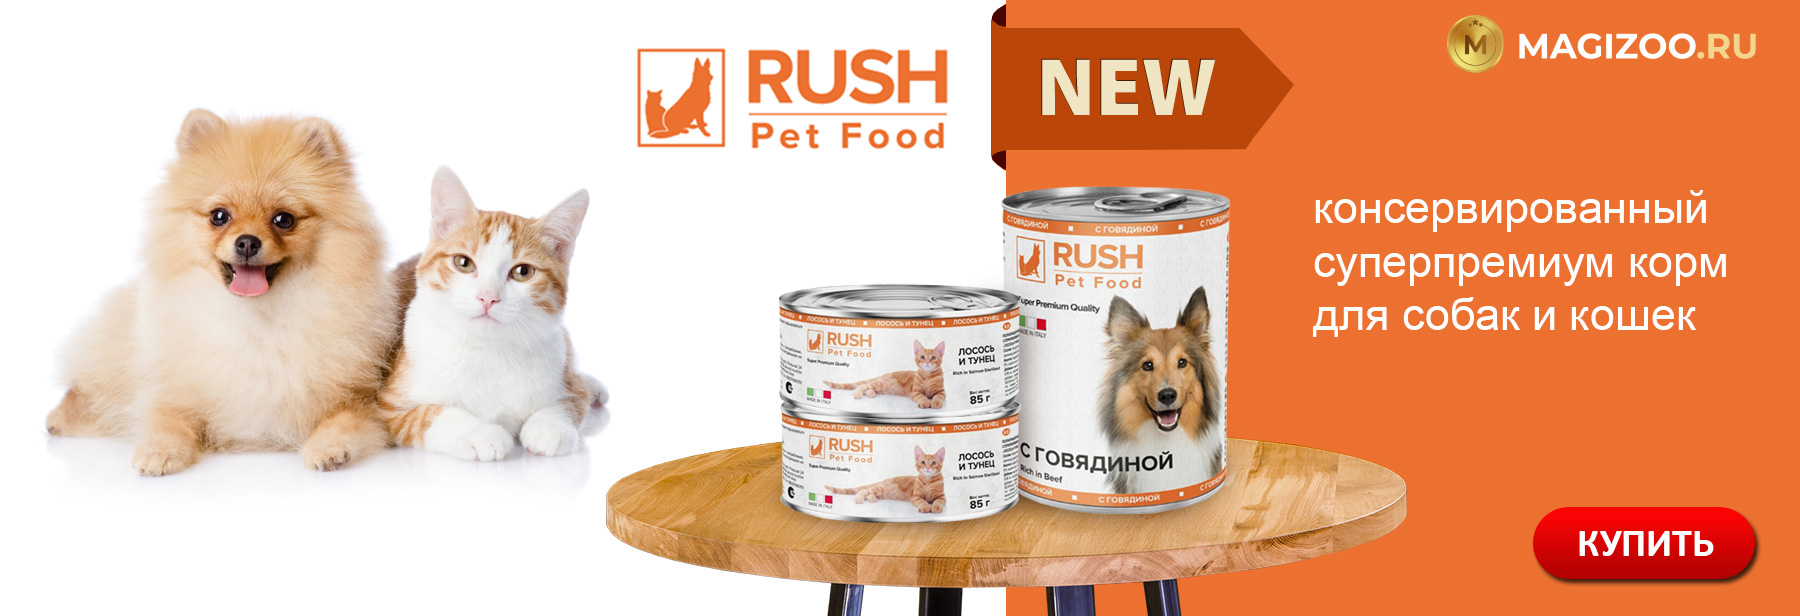 Новинка! Консервы RUSH PET FOOD для собак и кошек!